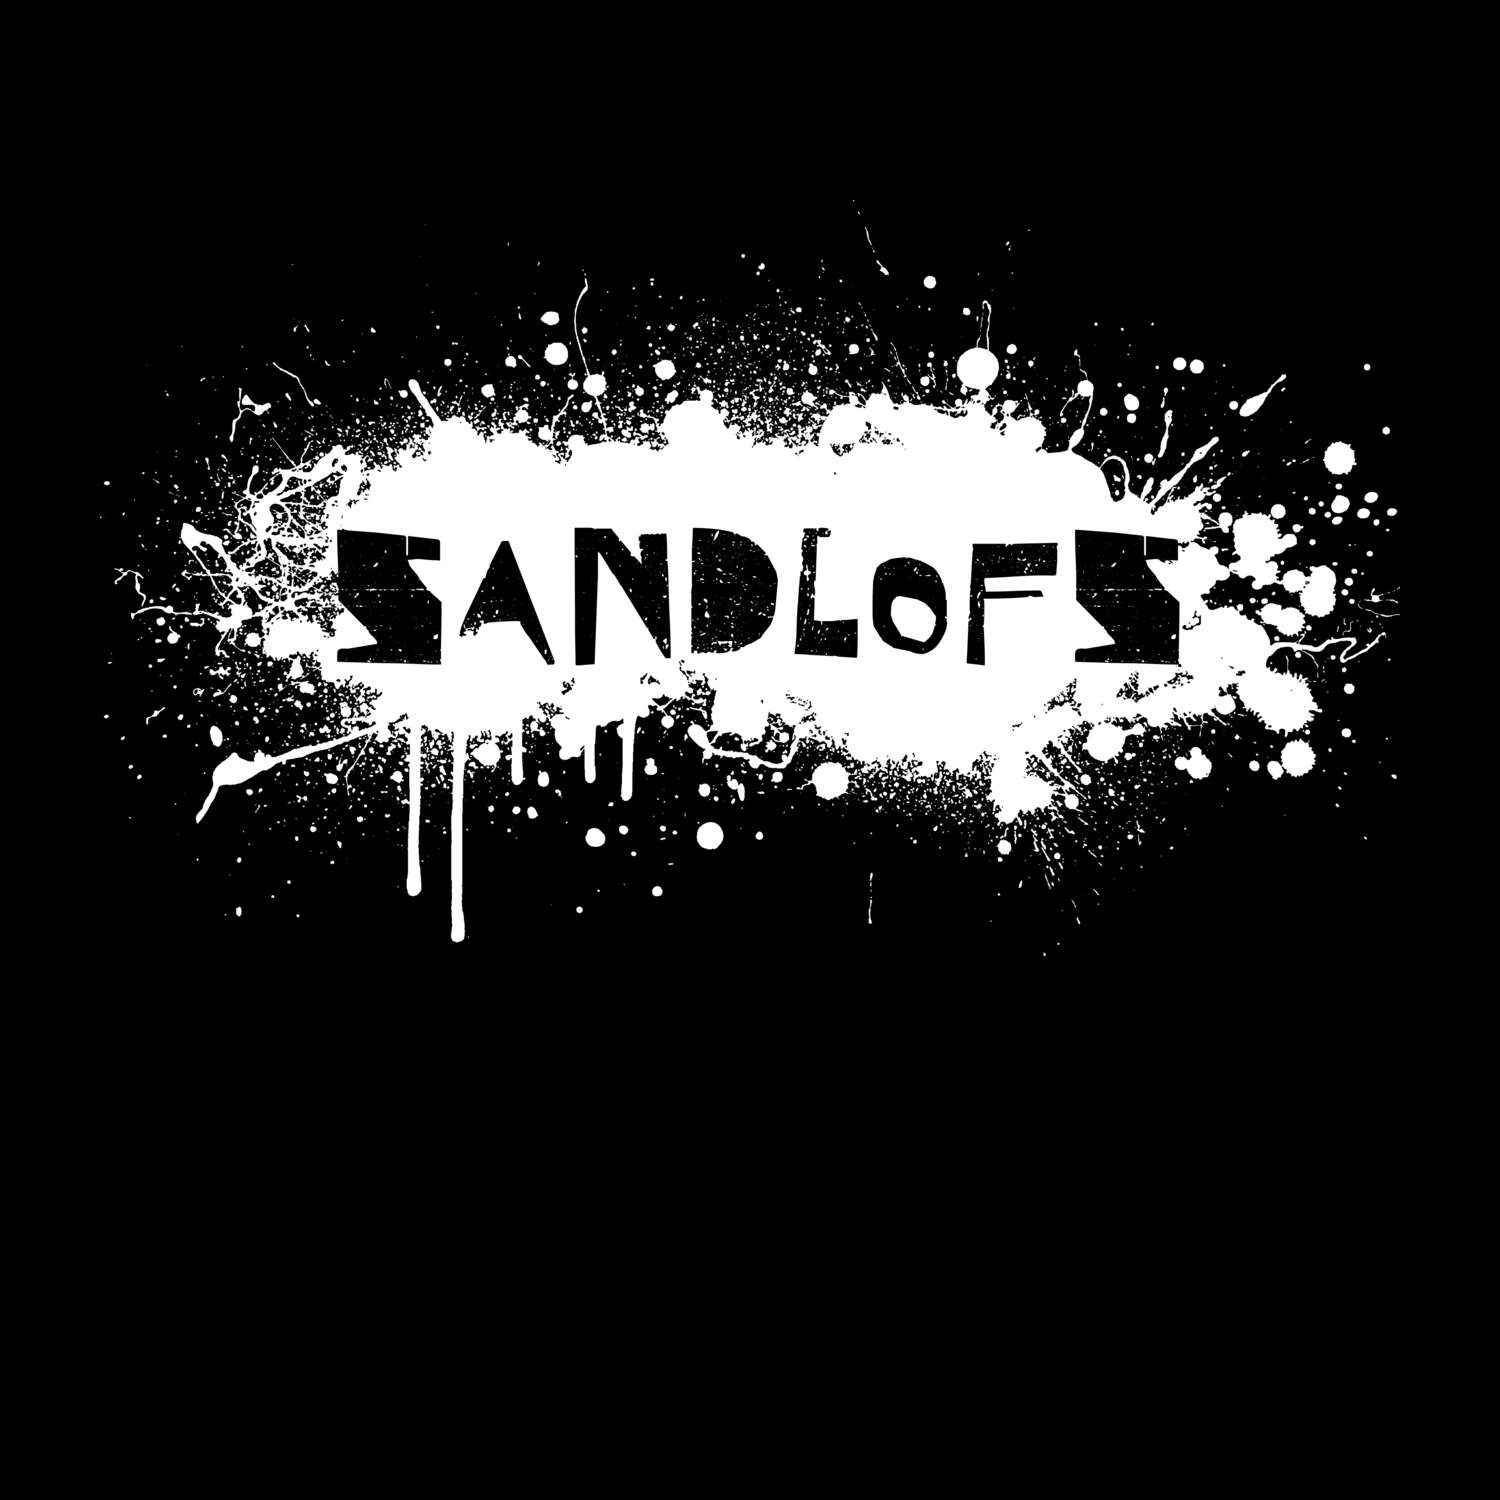 Sandlofs T-Shirt »Paint Splash Punk«